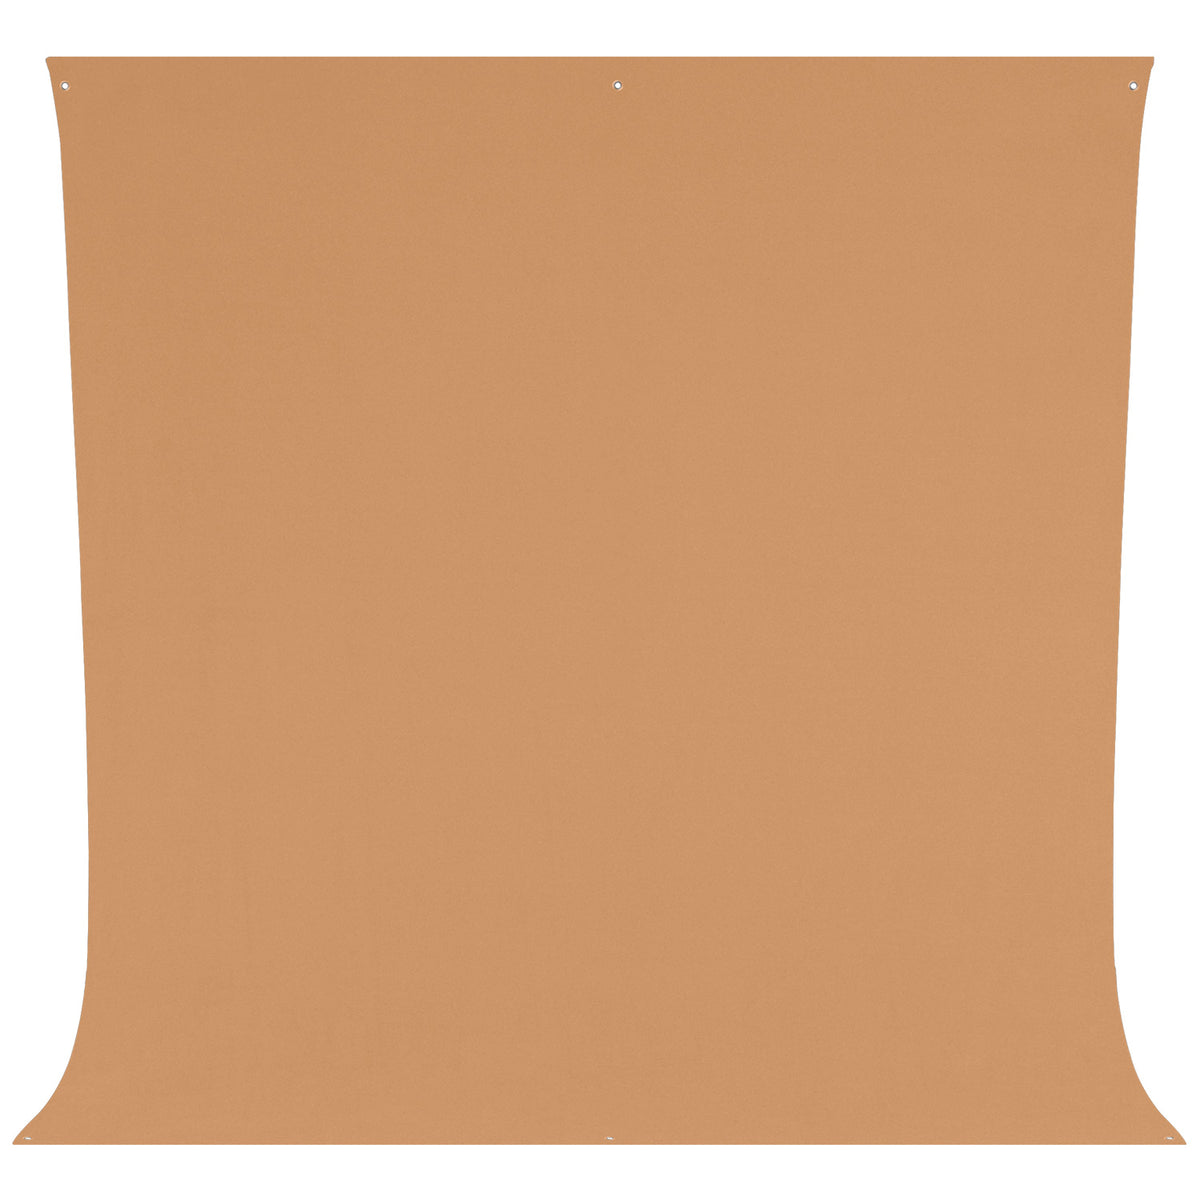 Wrinkle-Resistant Backdrop - Brown Sugar (9' x 10')